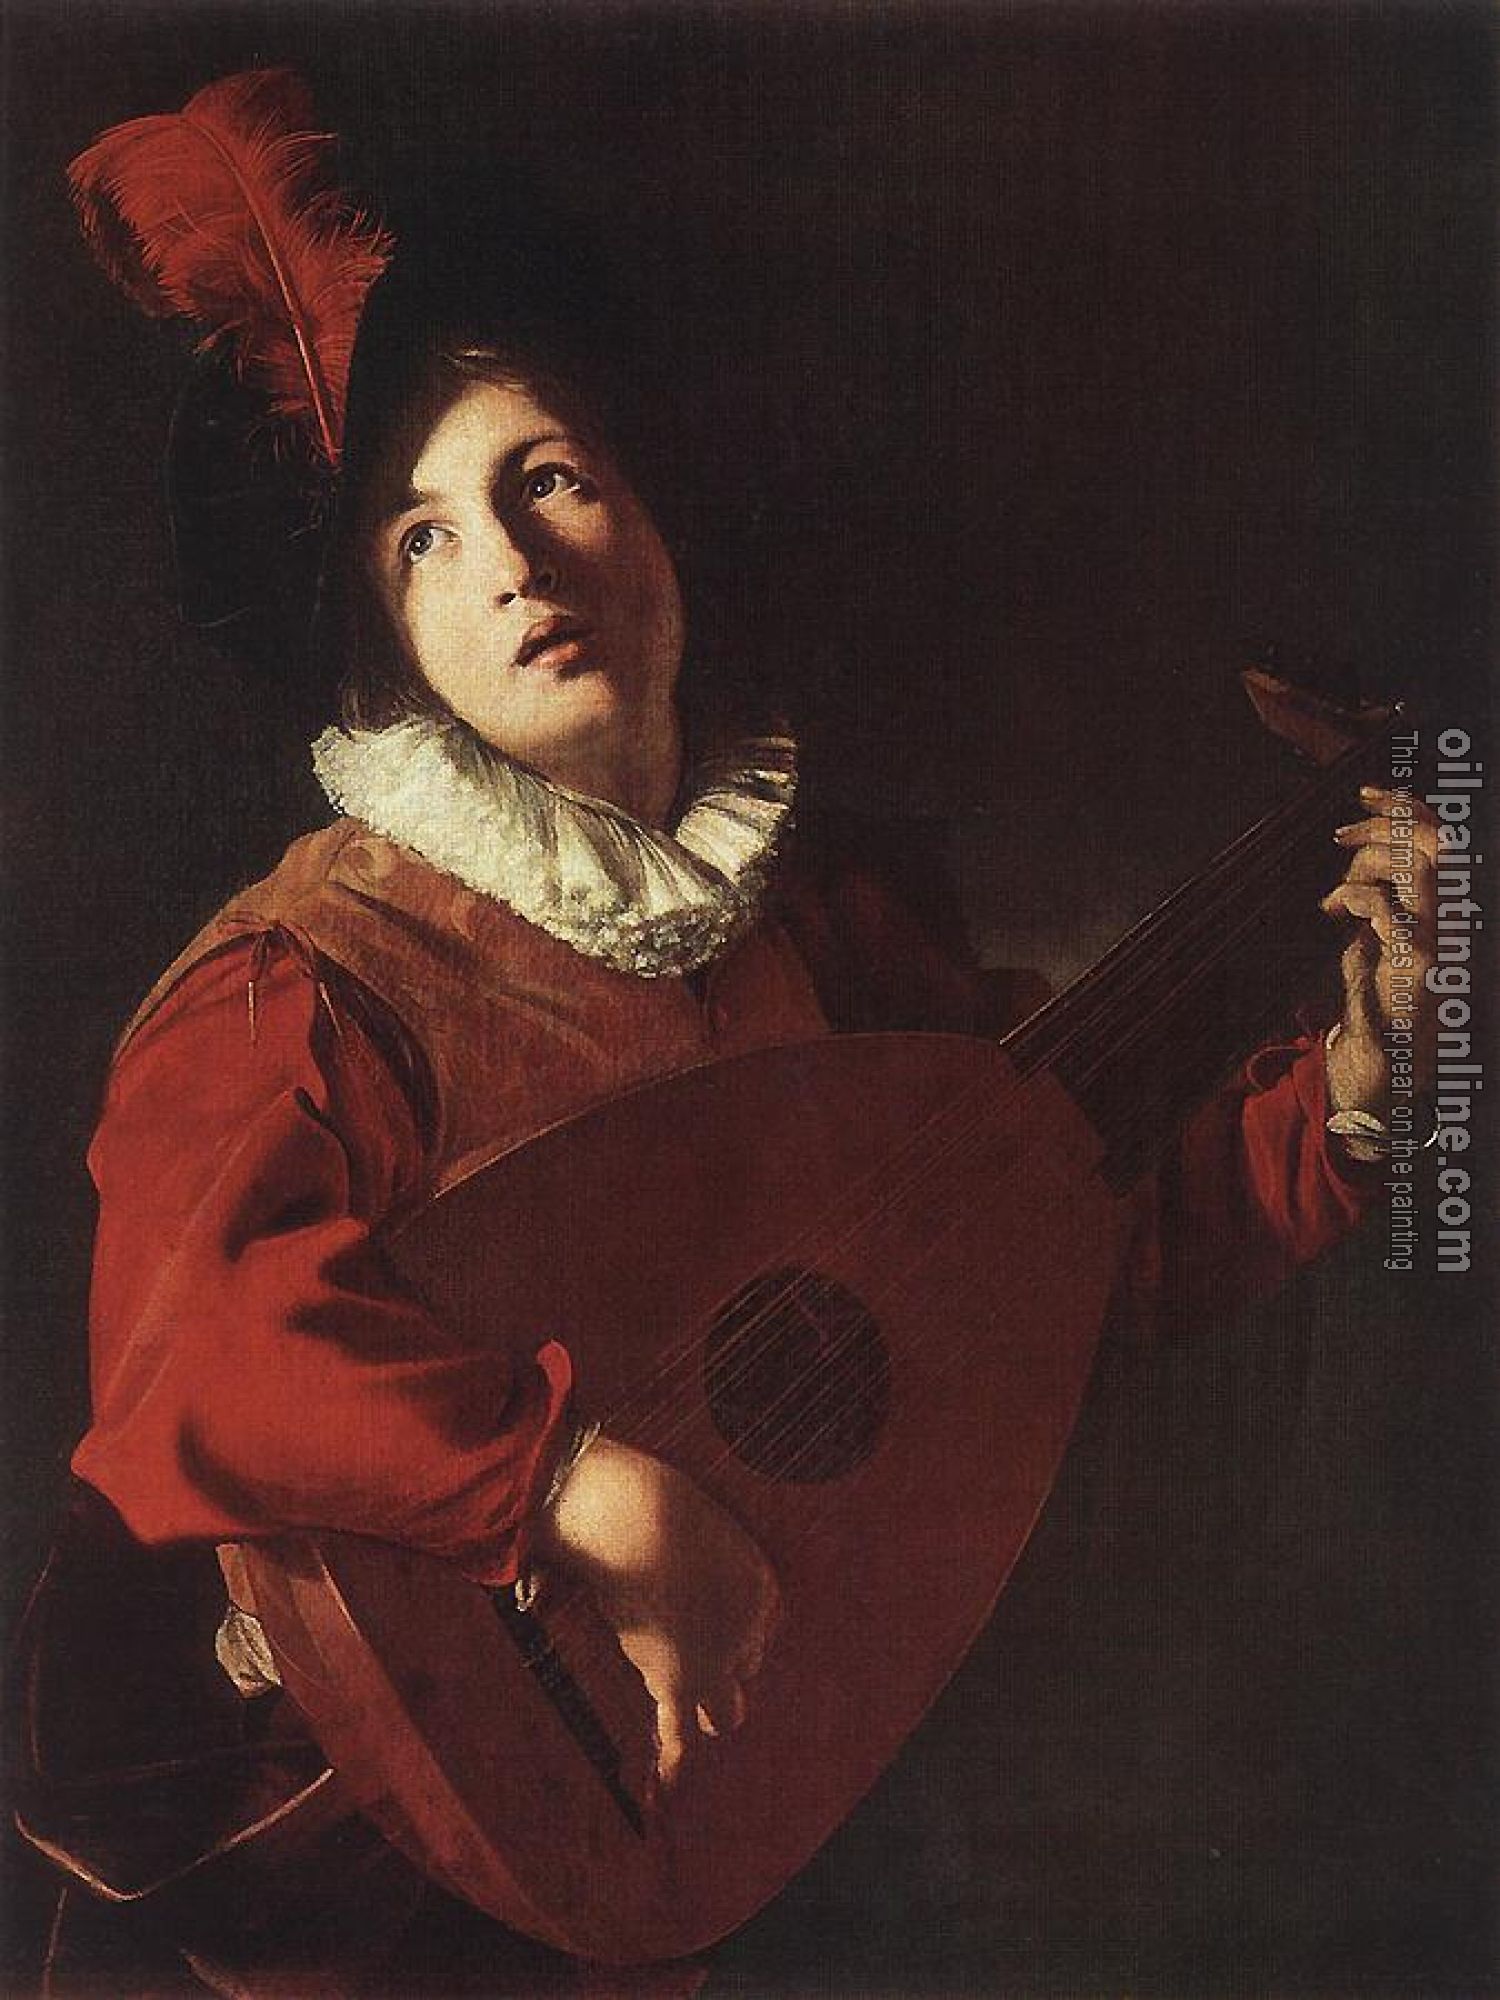 Manfredi, Bartolomeo - Lute Playing Young